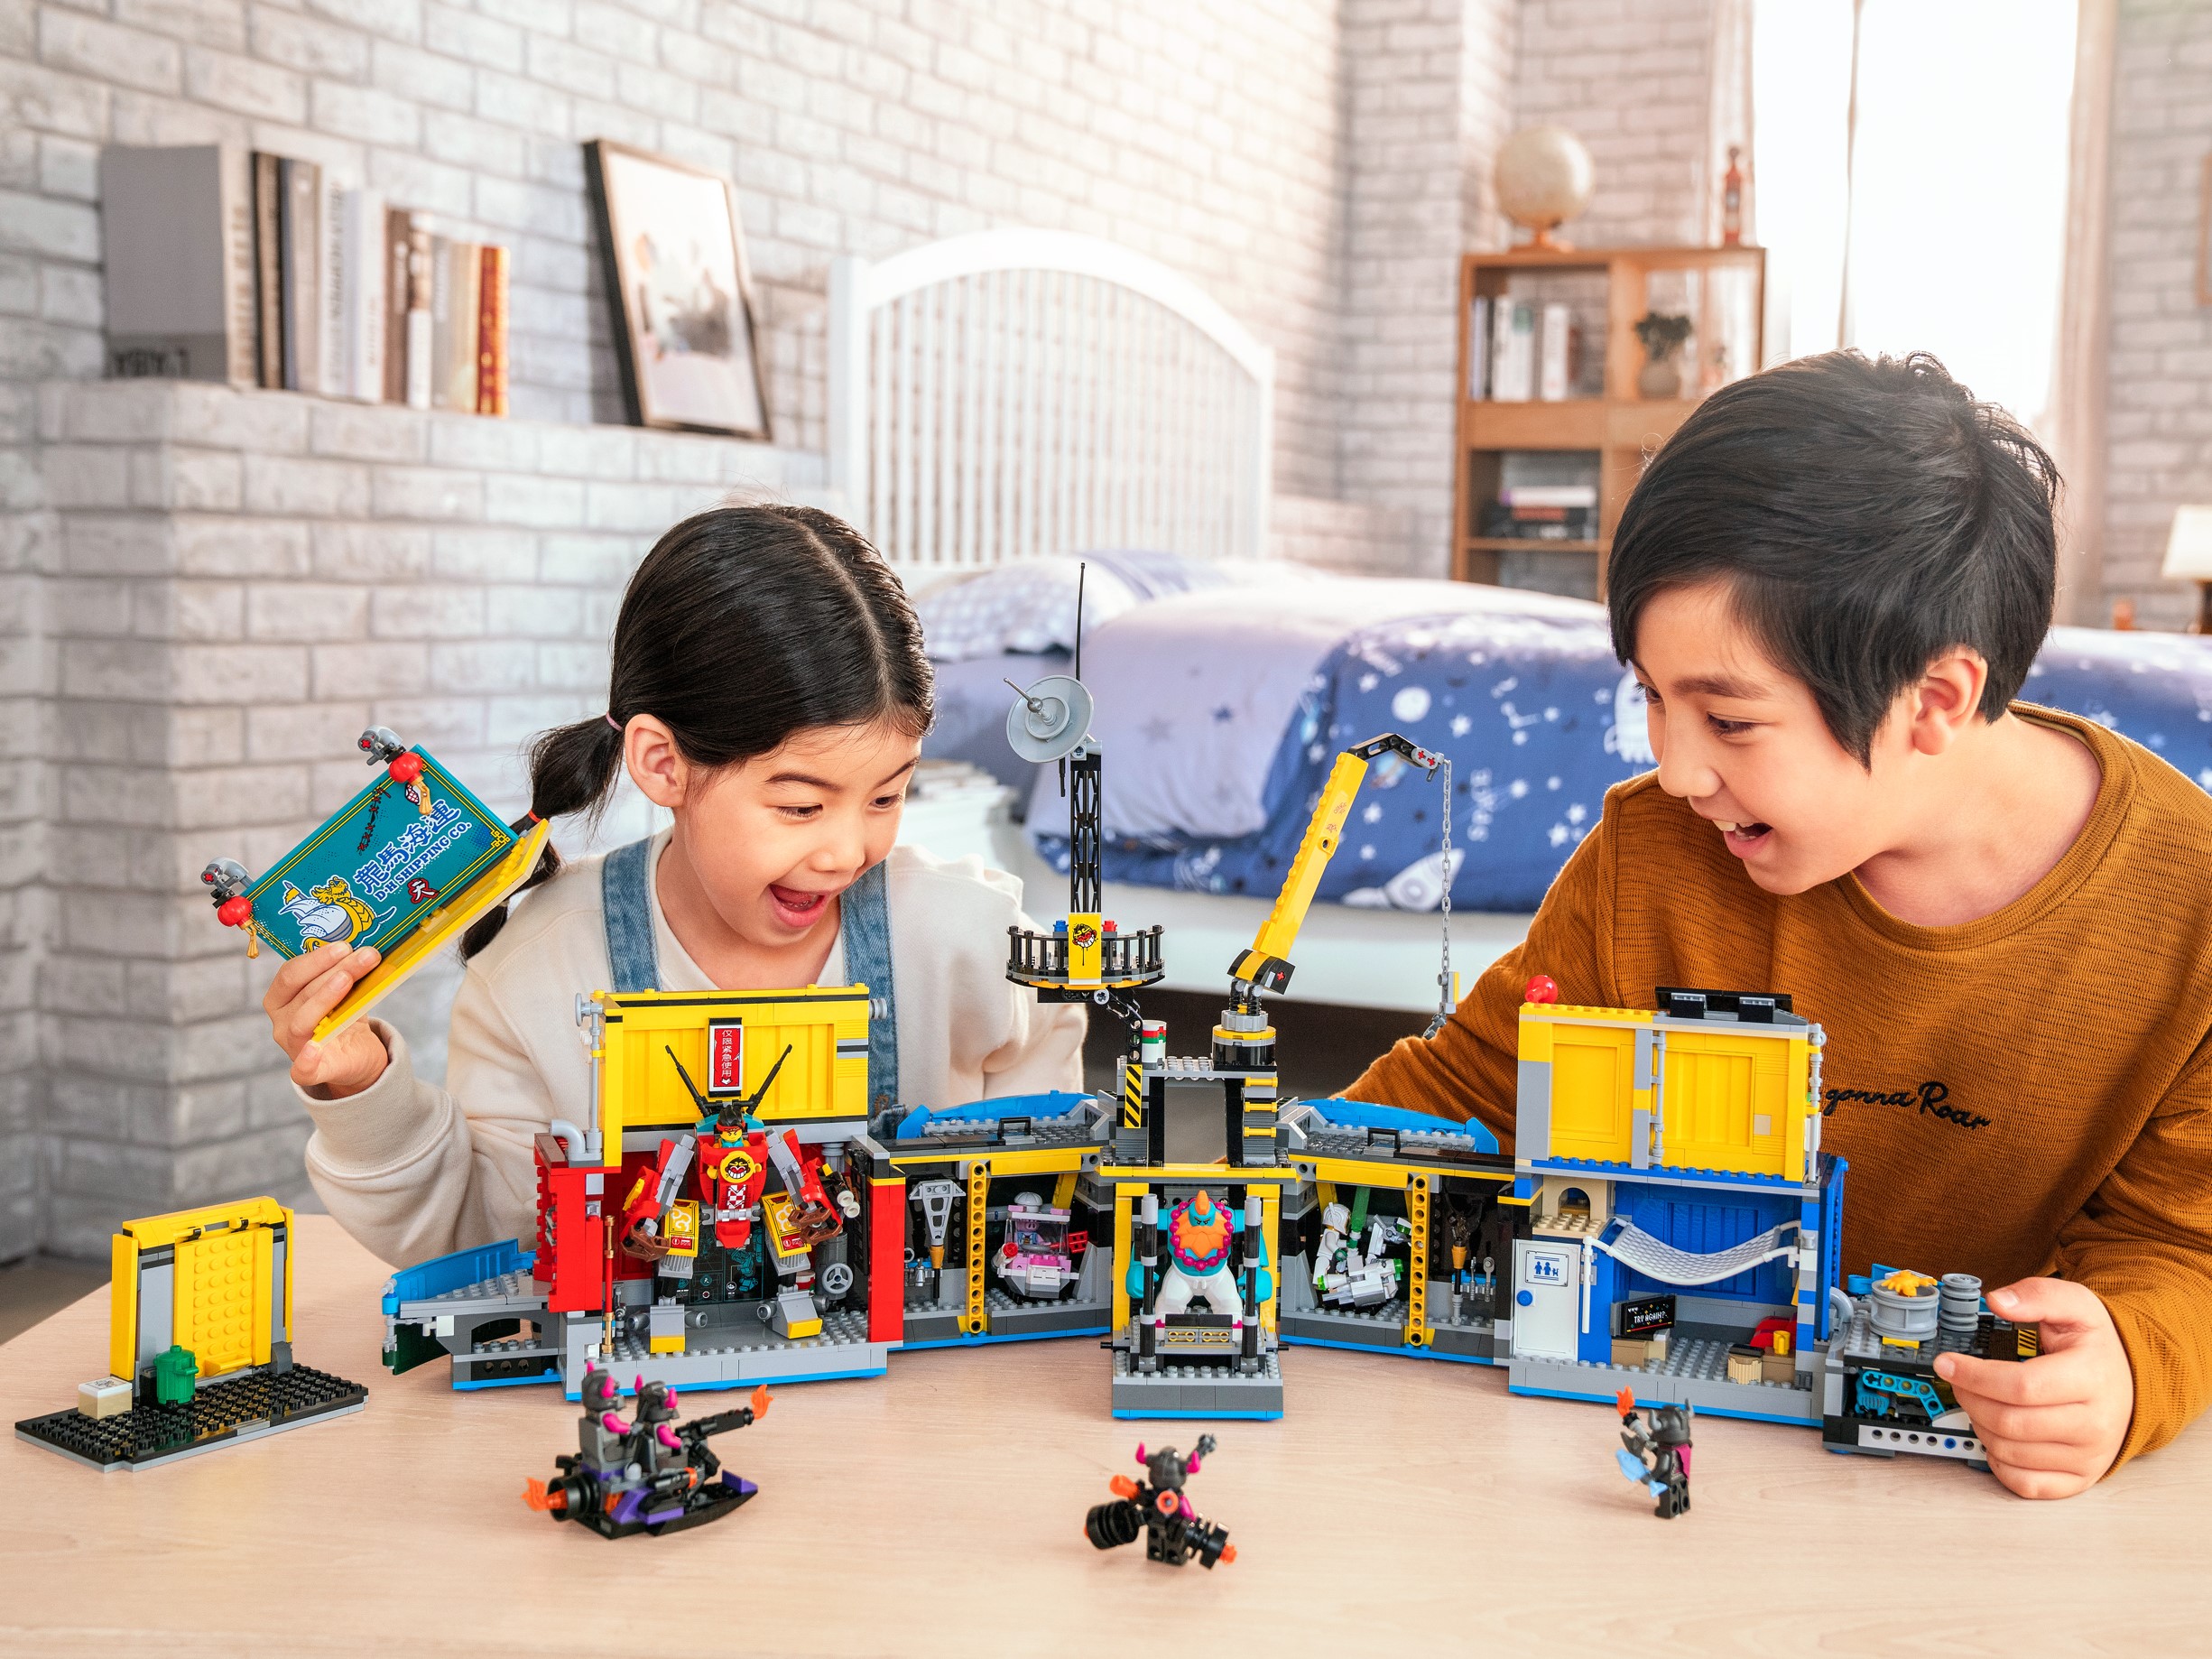 全国配送可 レゴ キット ビルディング 80013 キッド モンキー 知育玩具